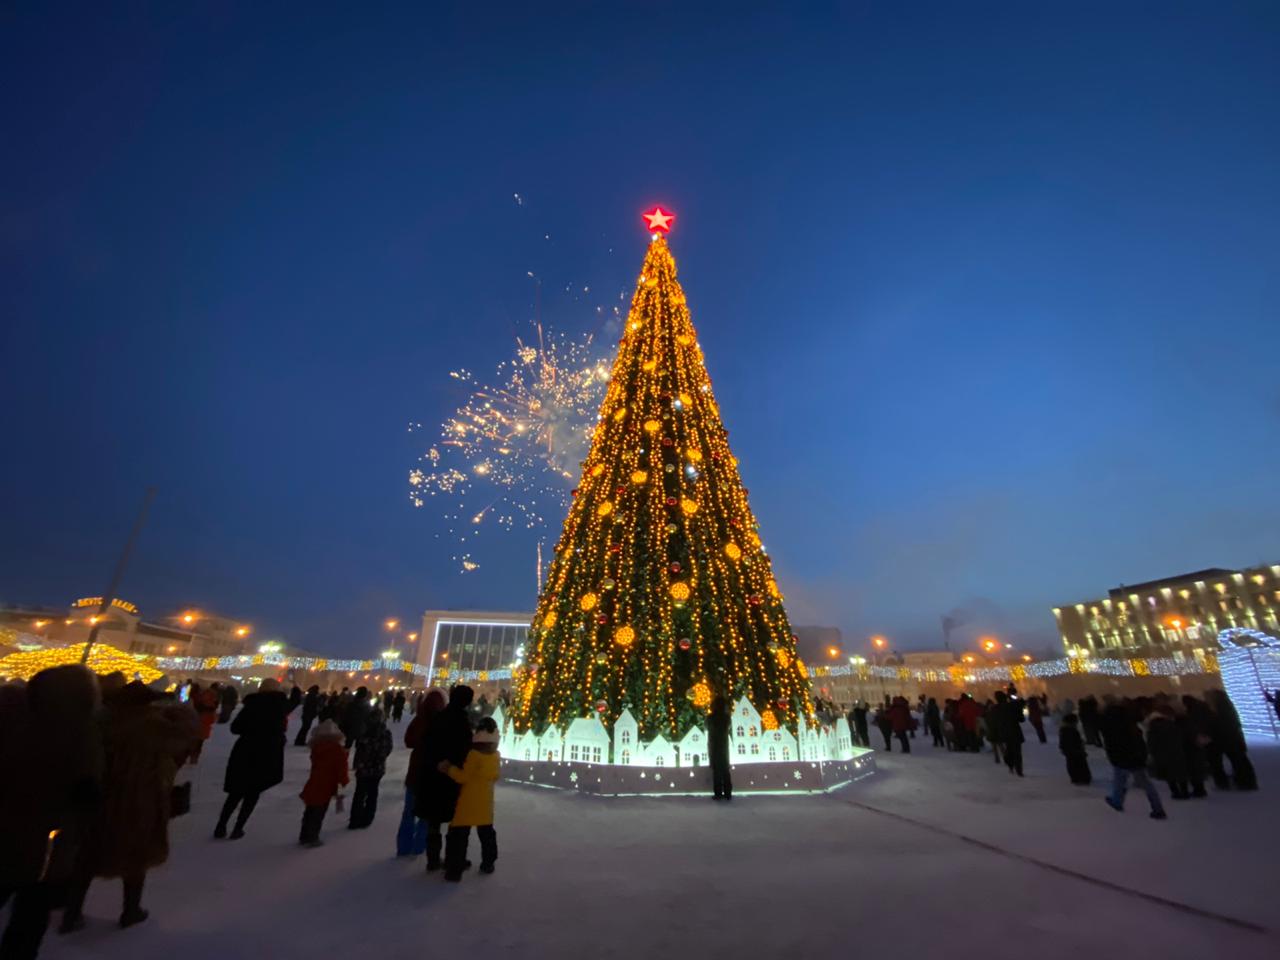 НВК «Саха» покажет зажжение первой новогодней елки в стране 1 декабря